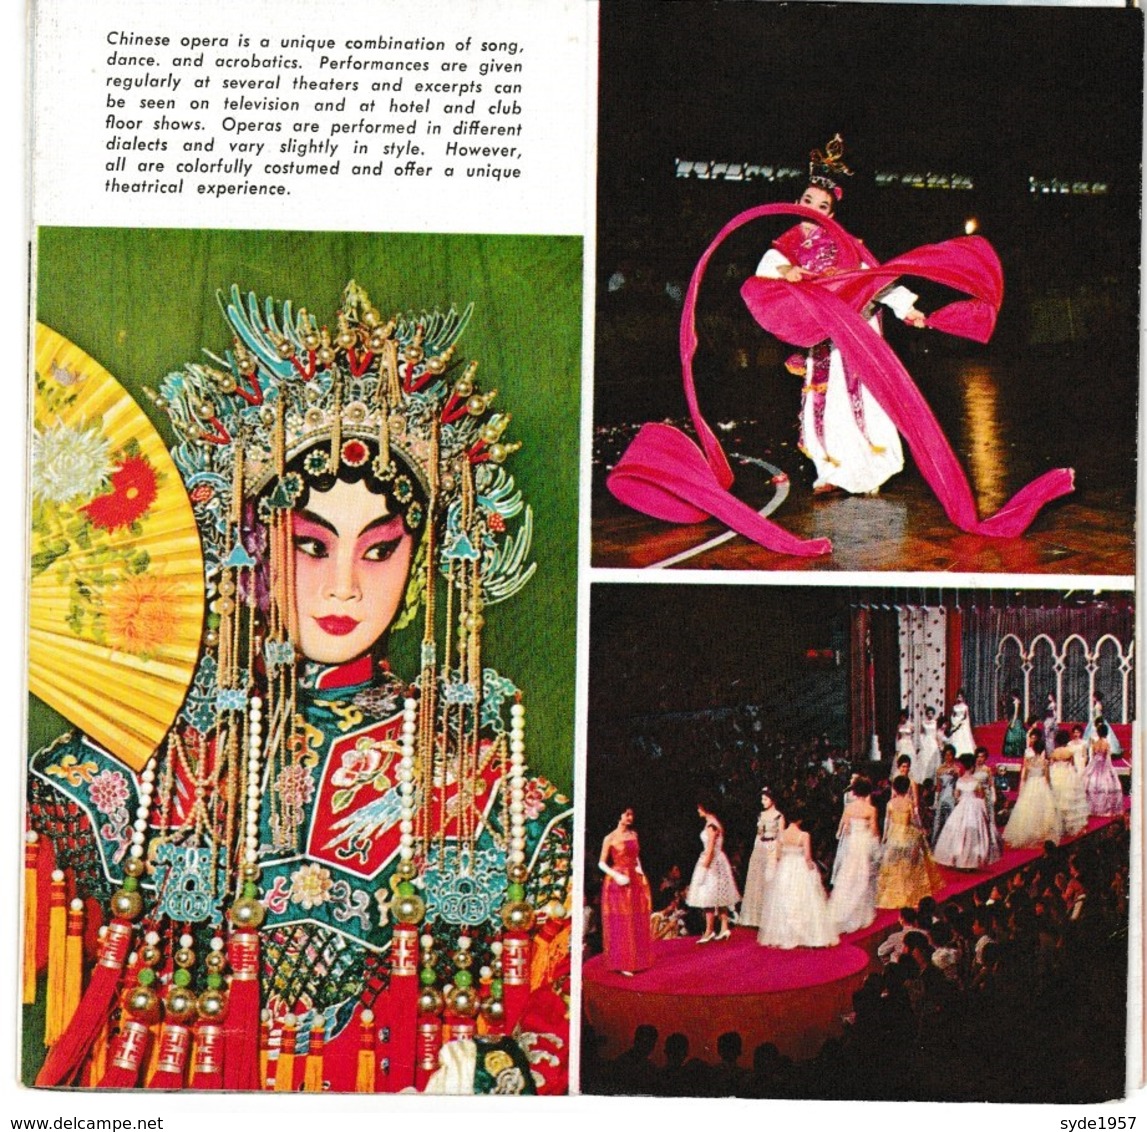 Brochure tourisique sur la Chine,  expos Bruxelles 1958